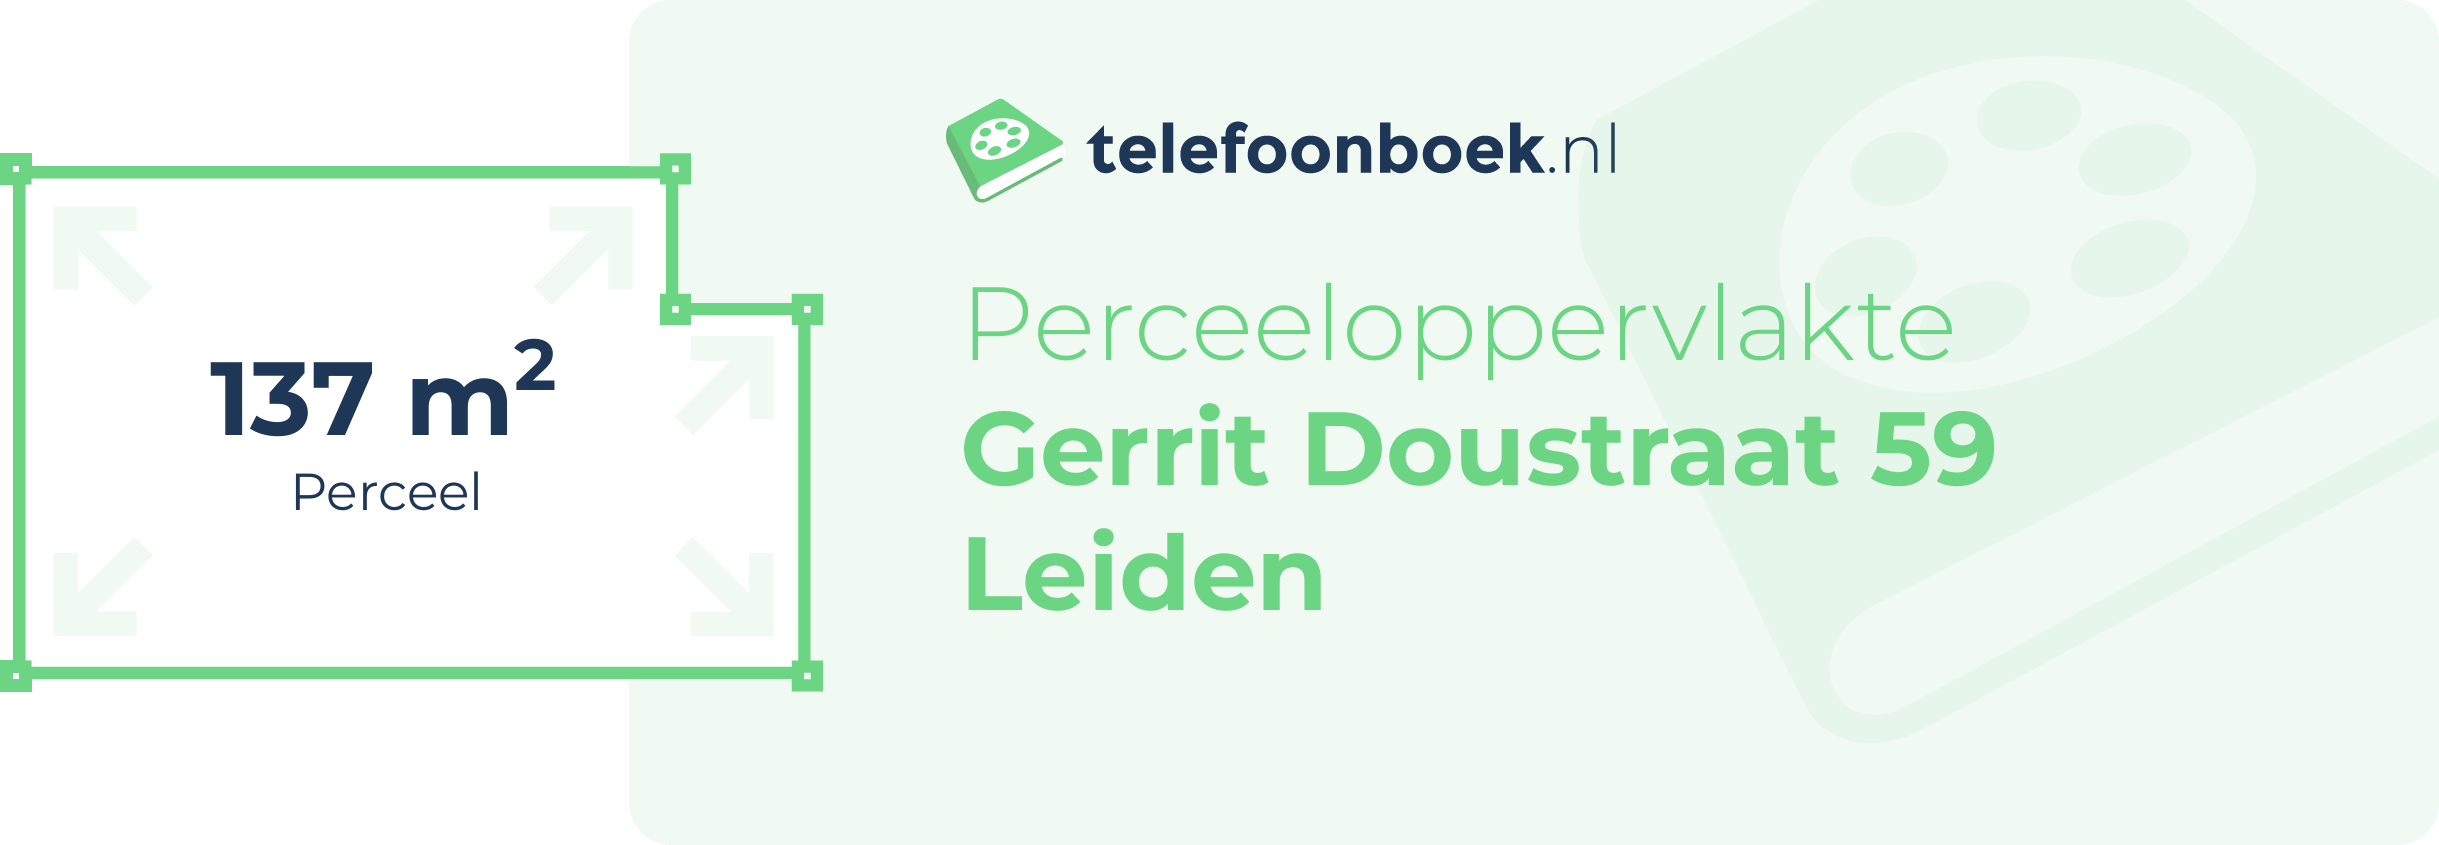 Perceeloppervlakte Gerrit Doustraat 59 Leiden